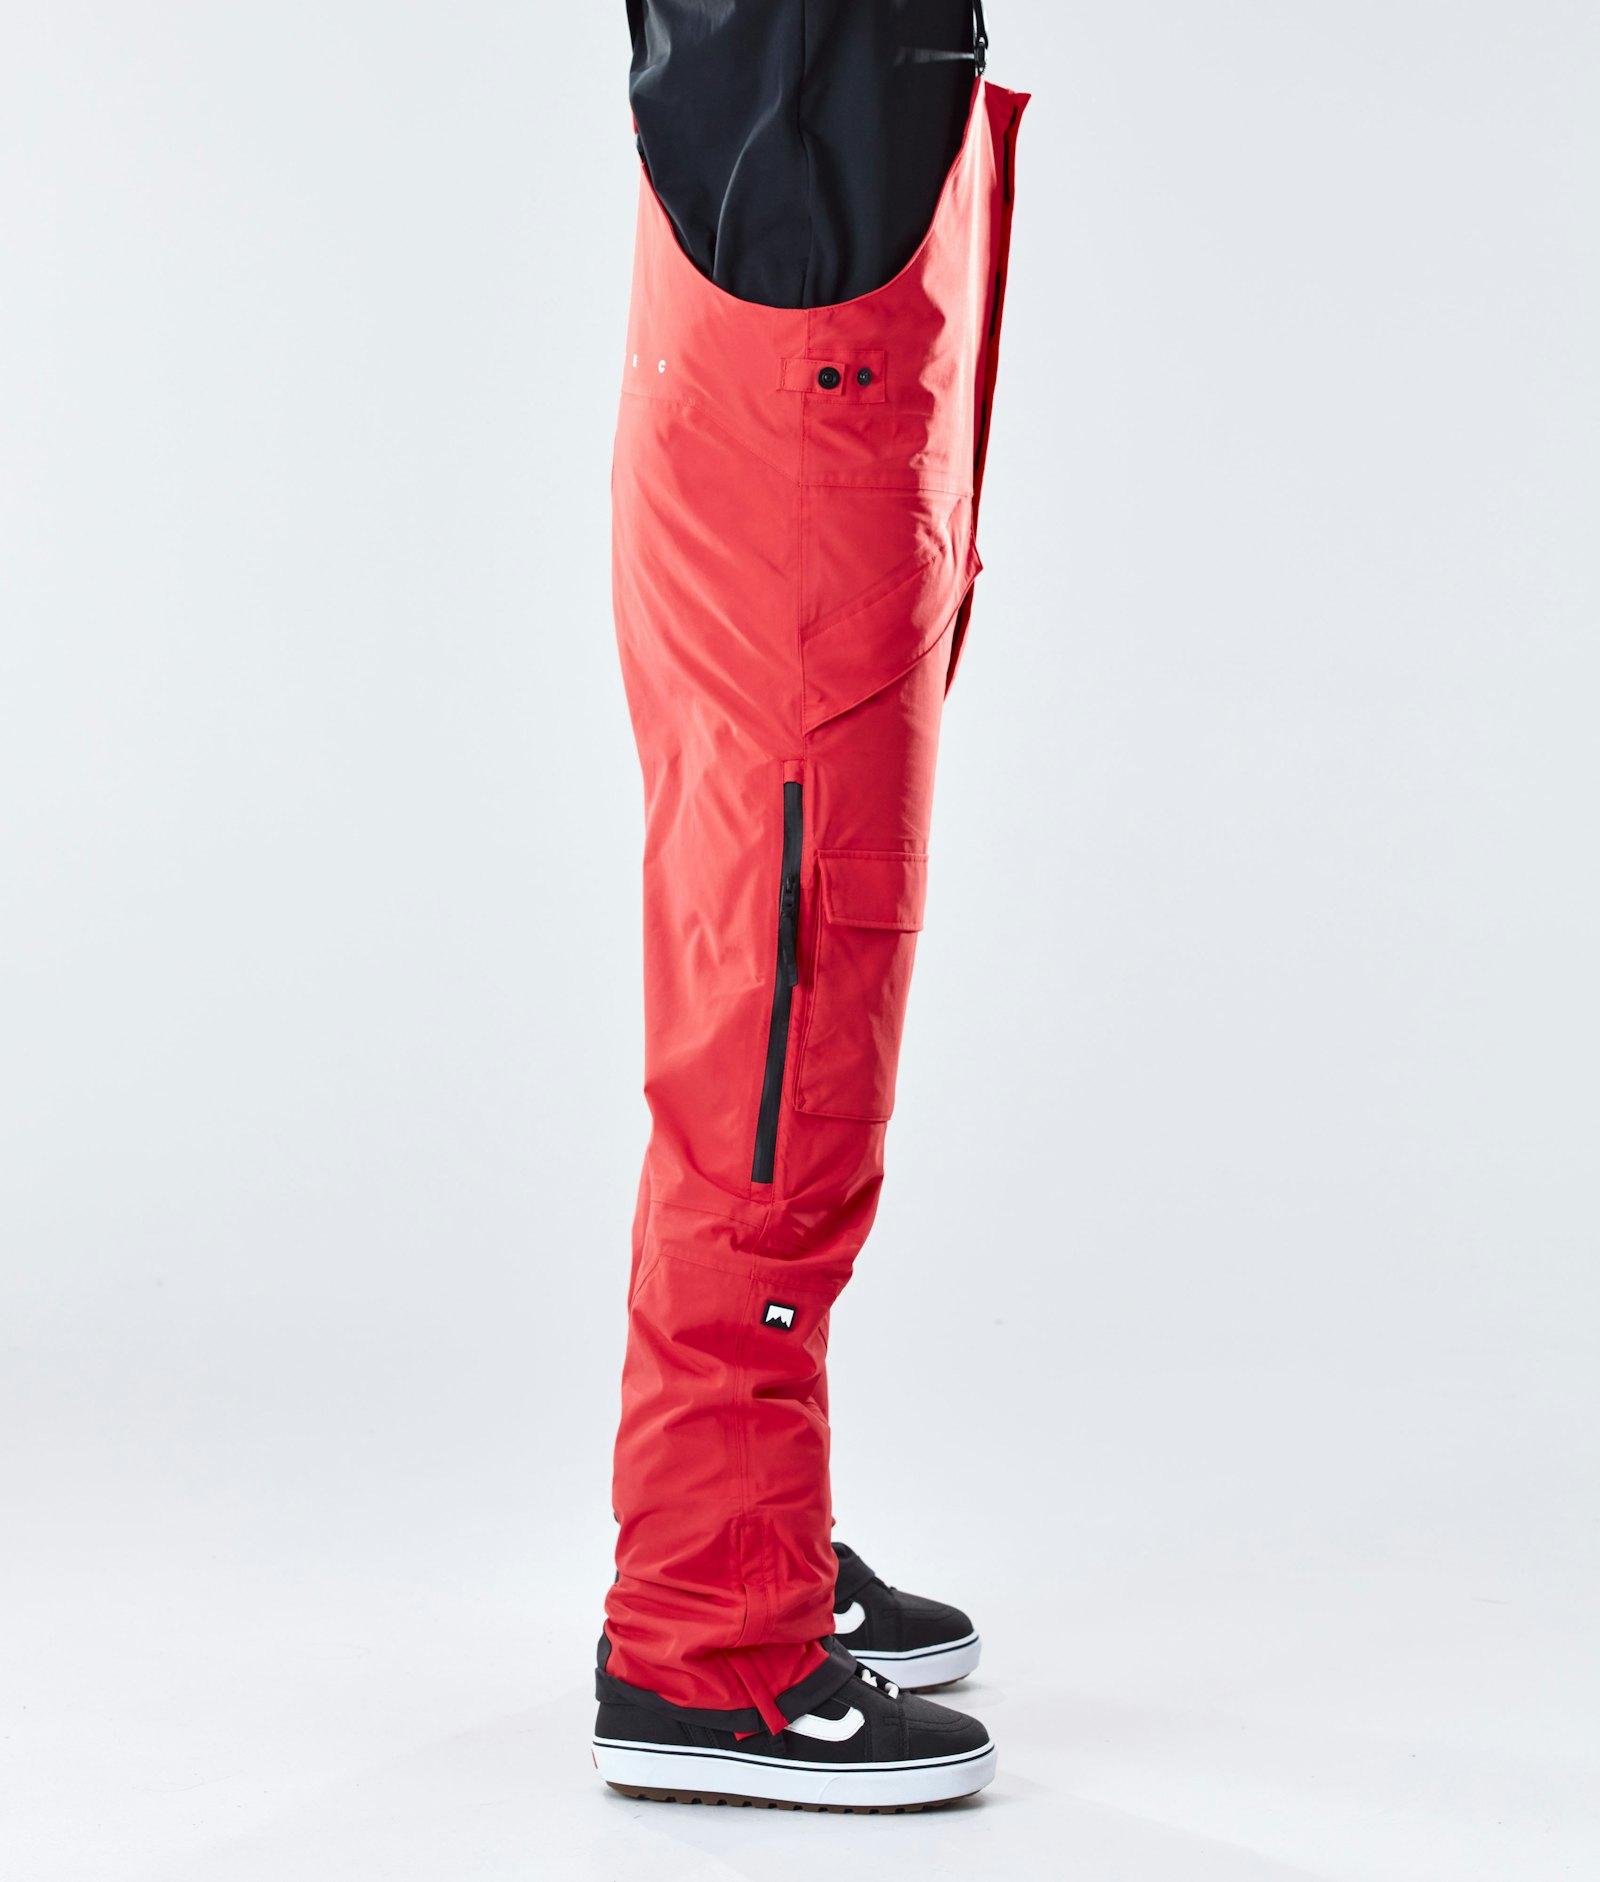 Fawk 2020 Pantaloni Snowboard Uomo Red Renewed, Immagine 2 di 6